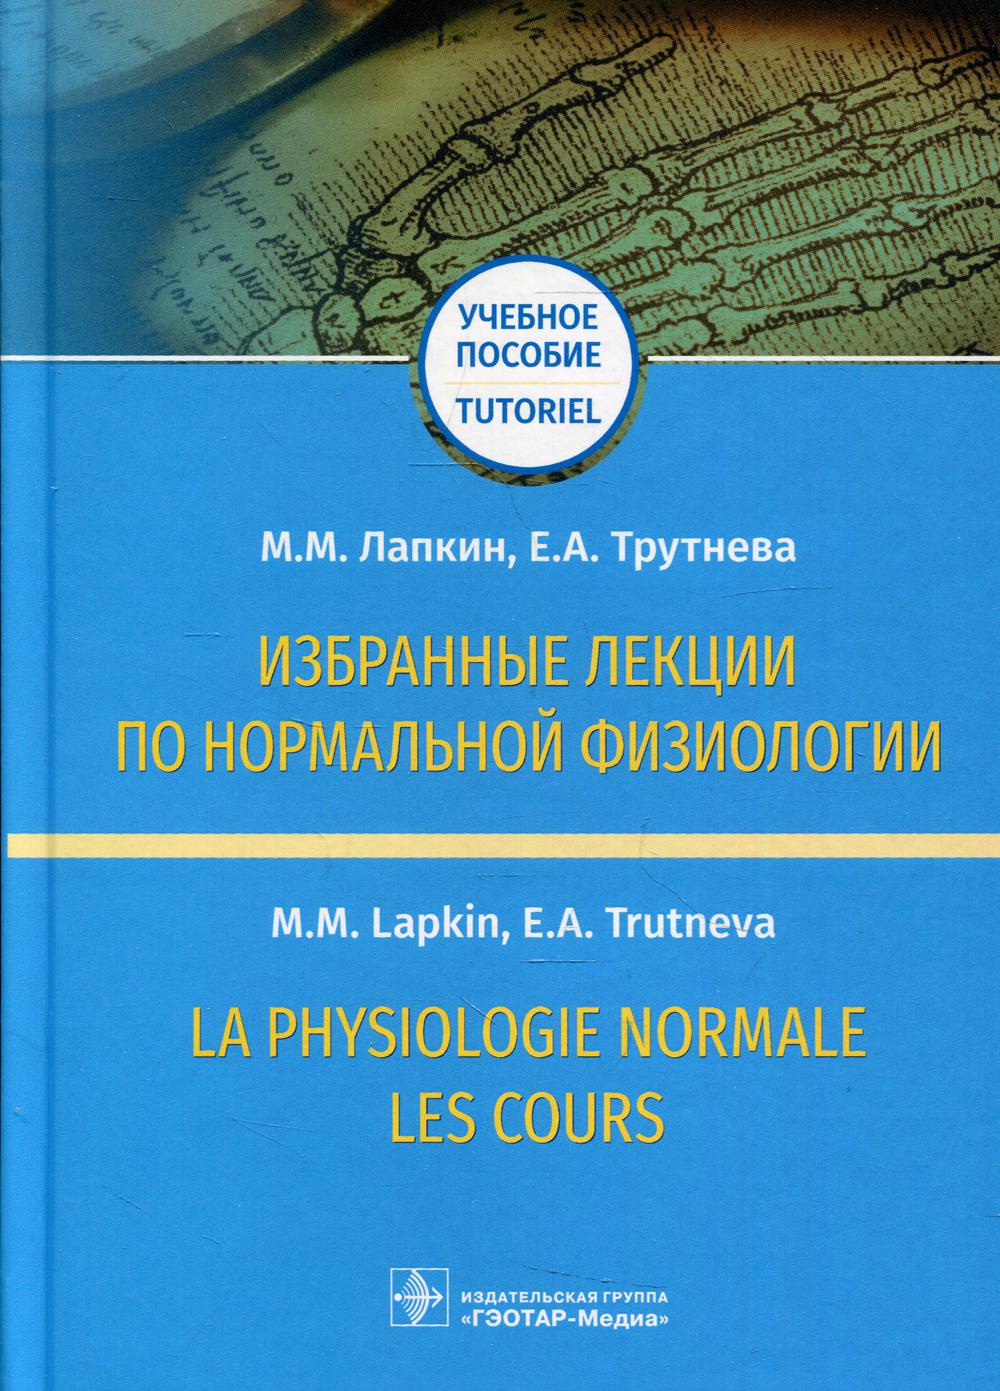 фото Книга избранные лекции по нормальной физиологии / la physiologie normale. les cours гэотар-медиа